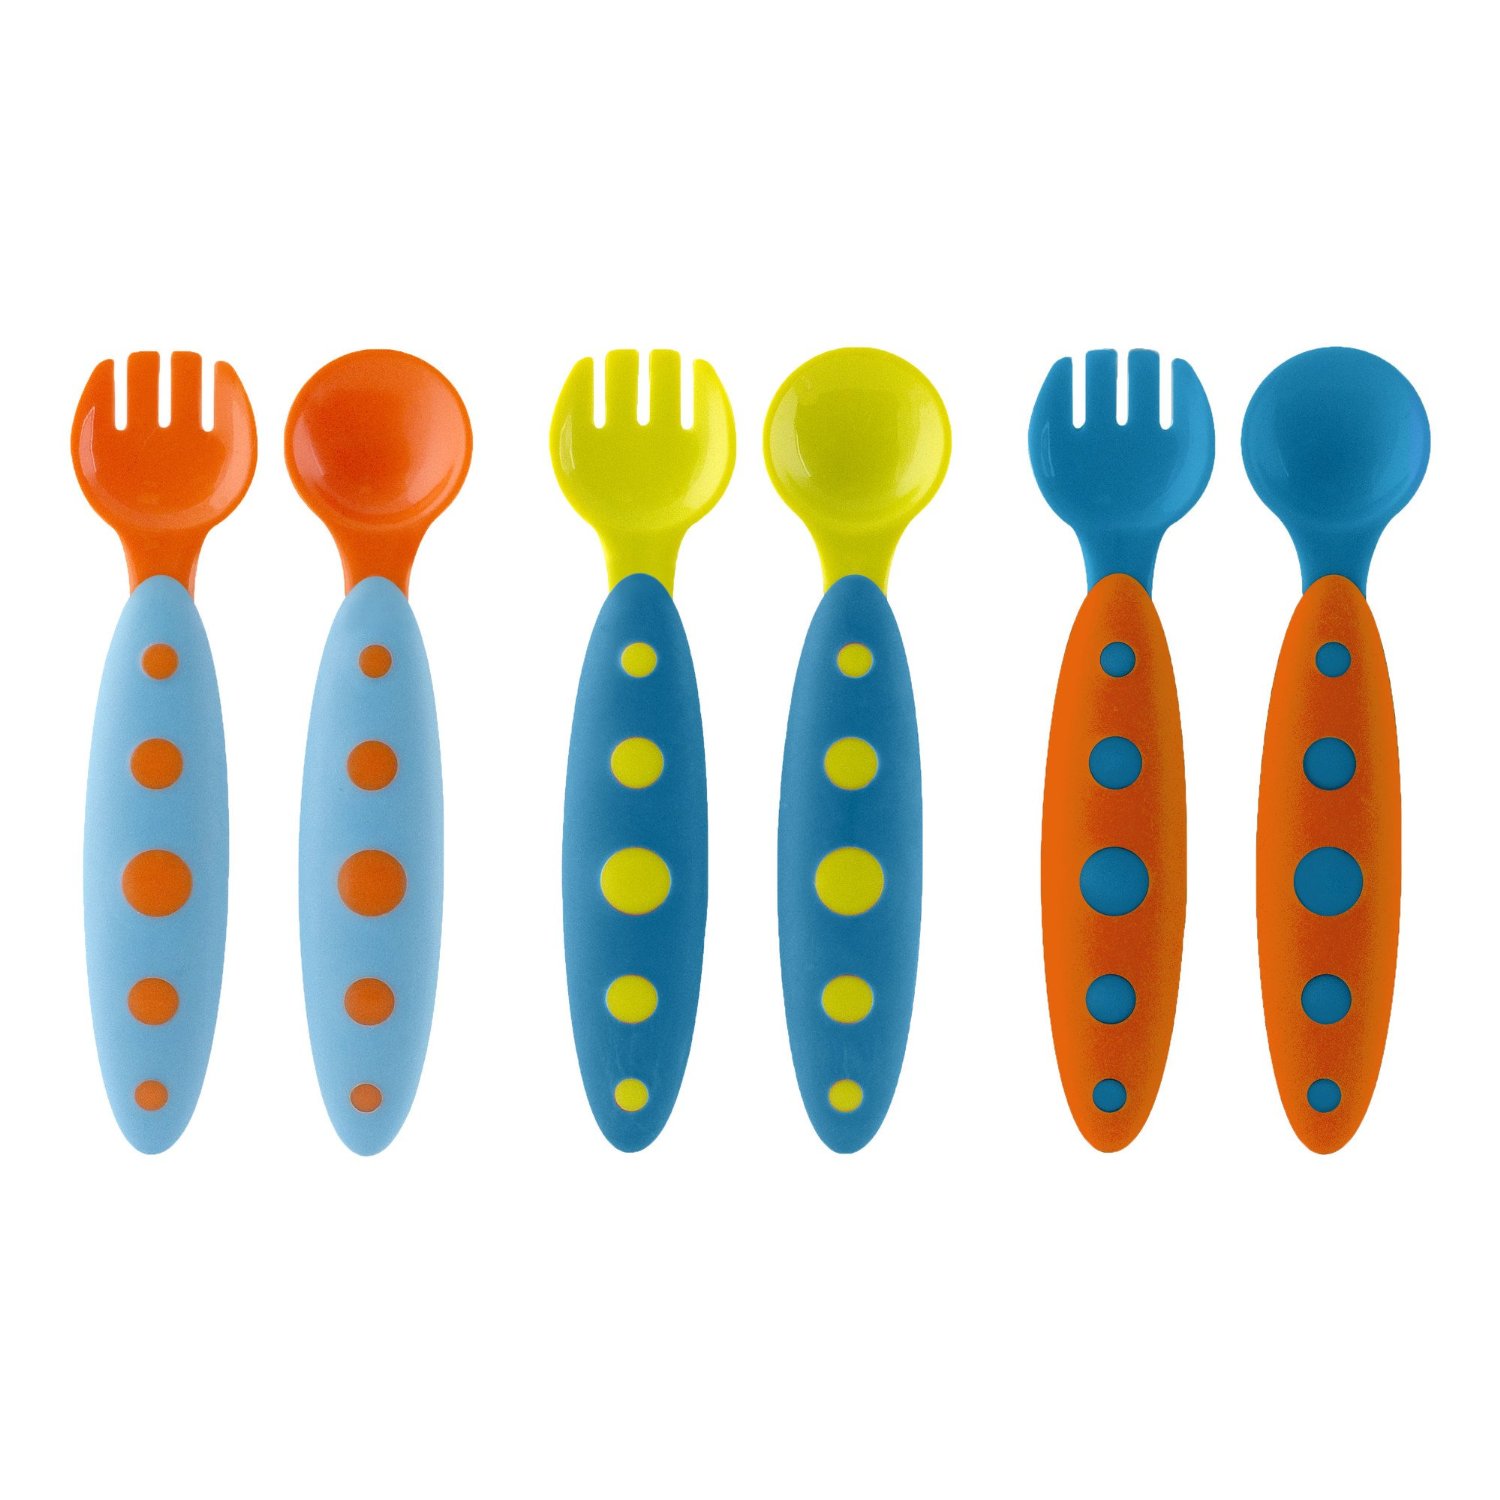 嬰兒餐具 Boon心情藍色叉匙組6件裝 (可拆單，不挑款）[babyzuriel 祖瑞兒嬰幼童用品]